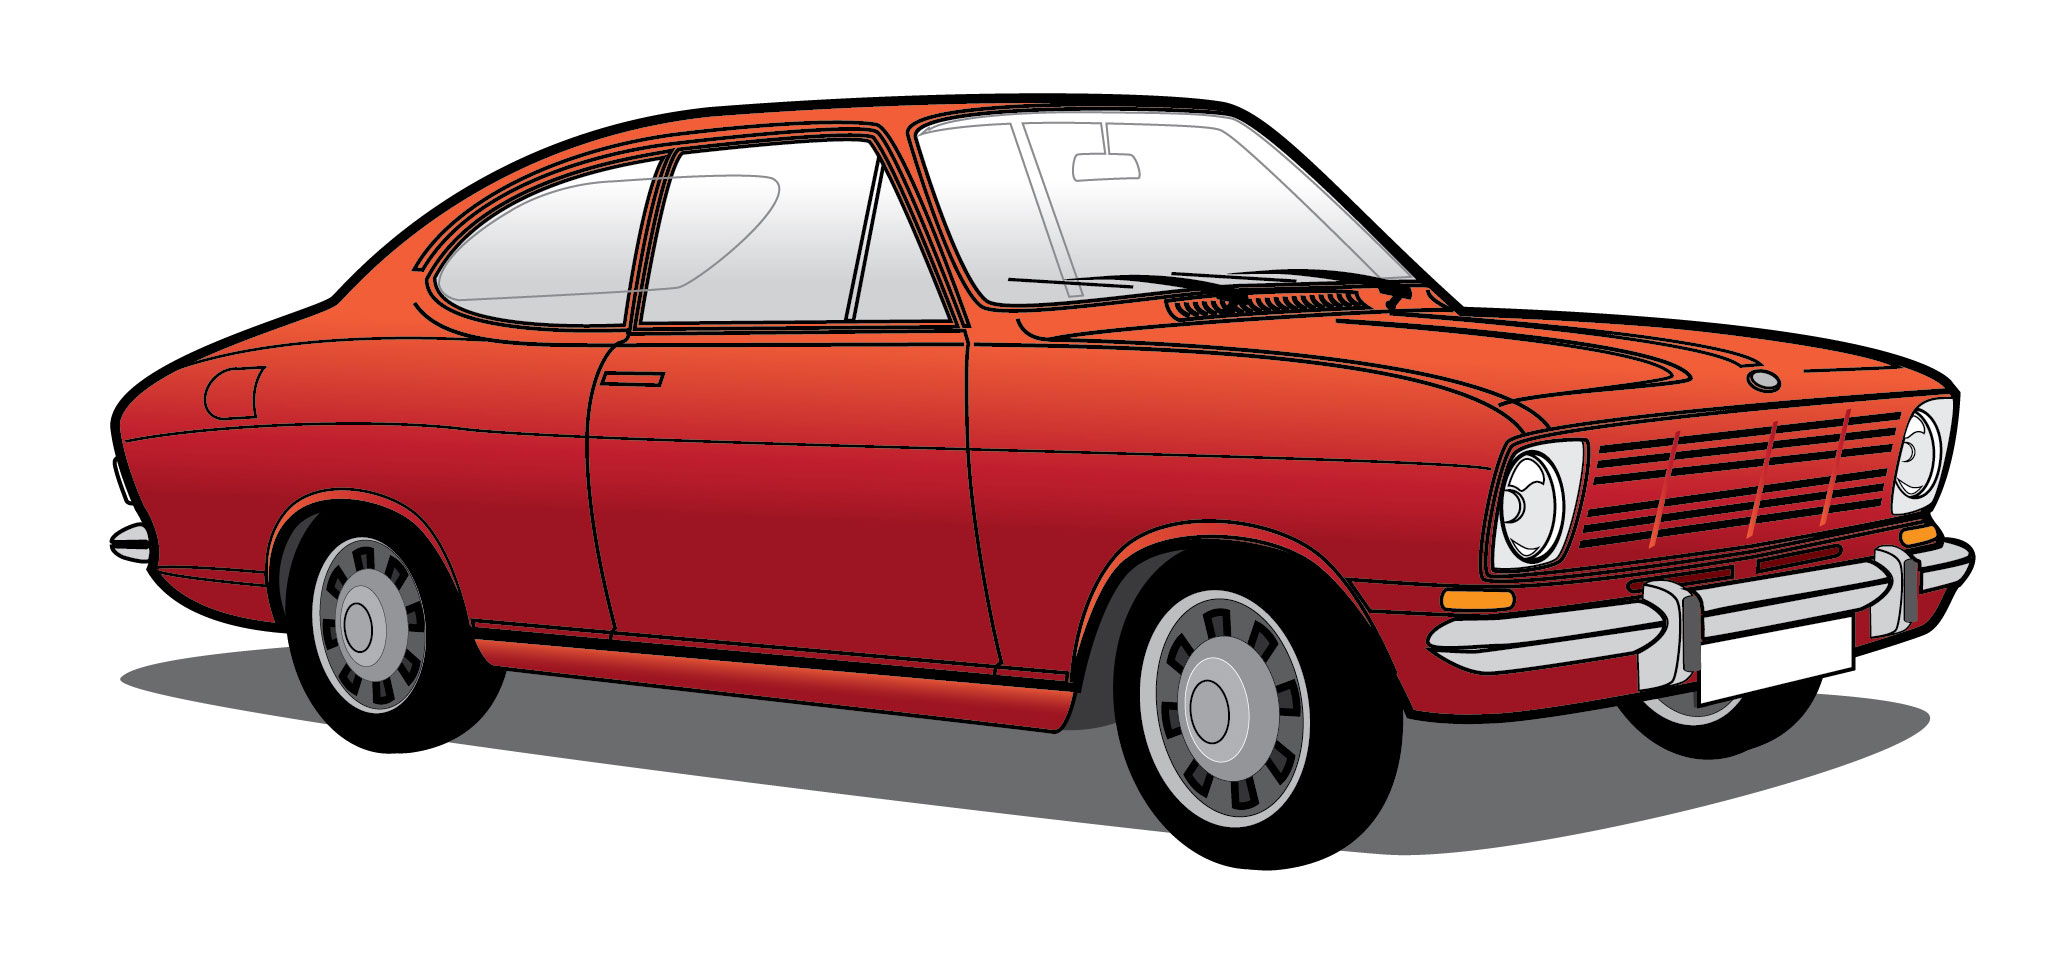 Opel-Kadett-illustration